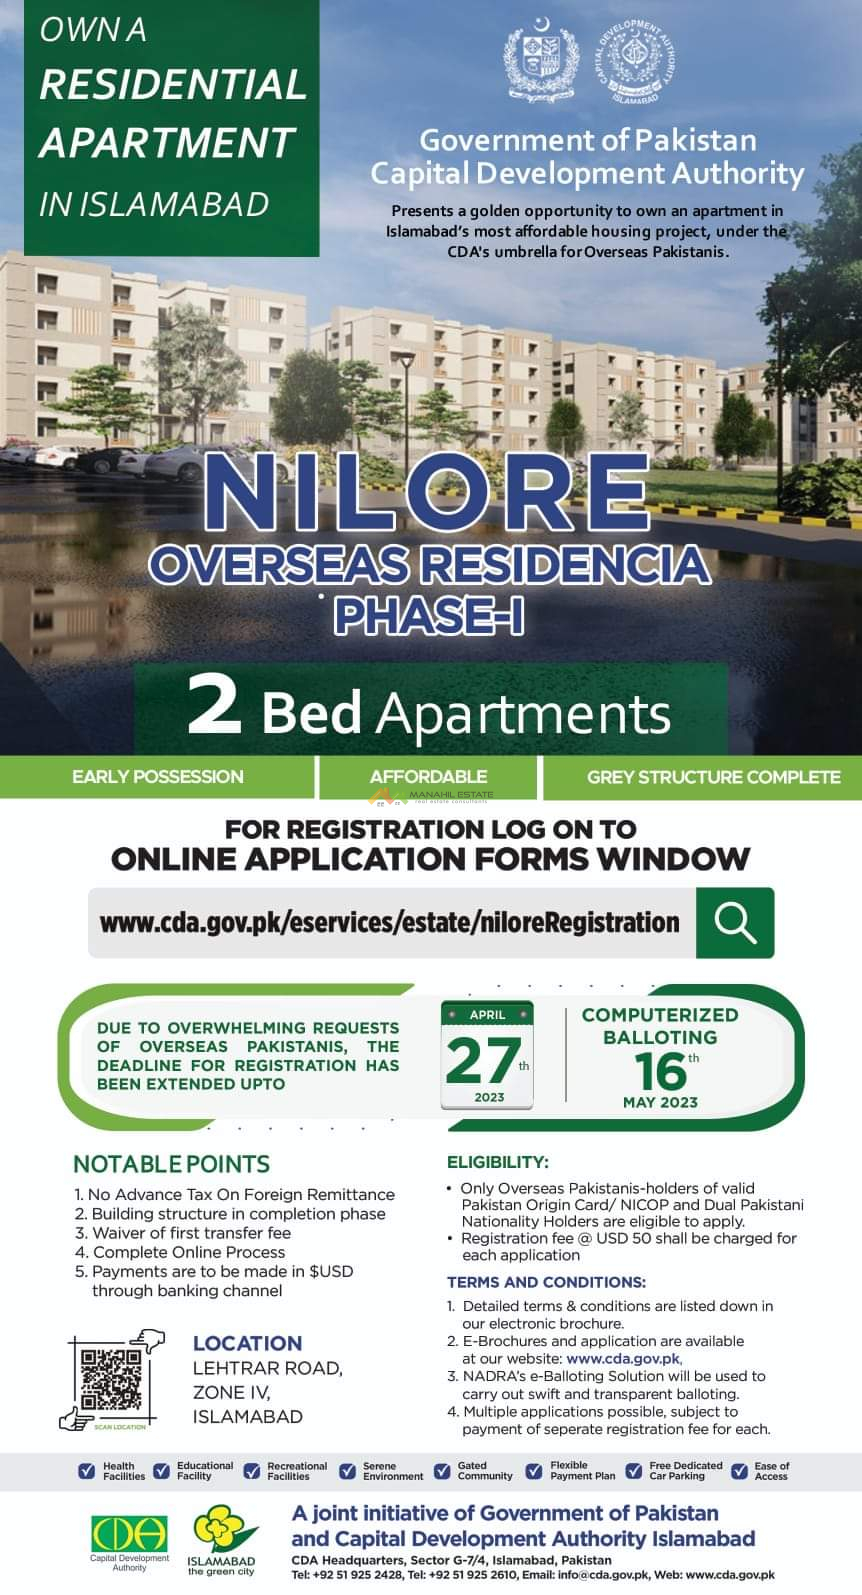 Nilore Overseas Residencia Phase-1